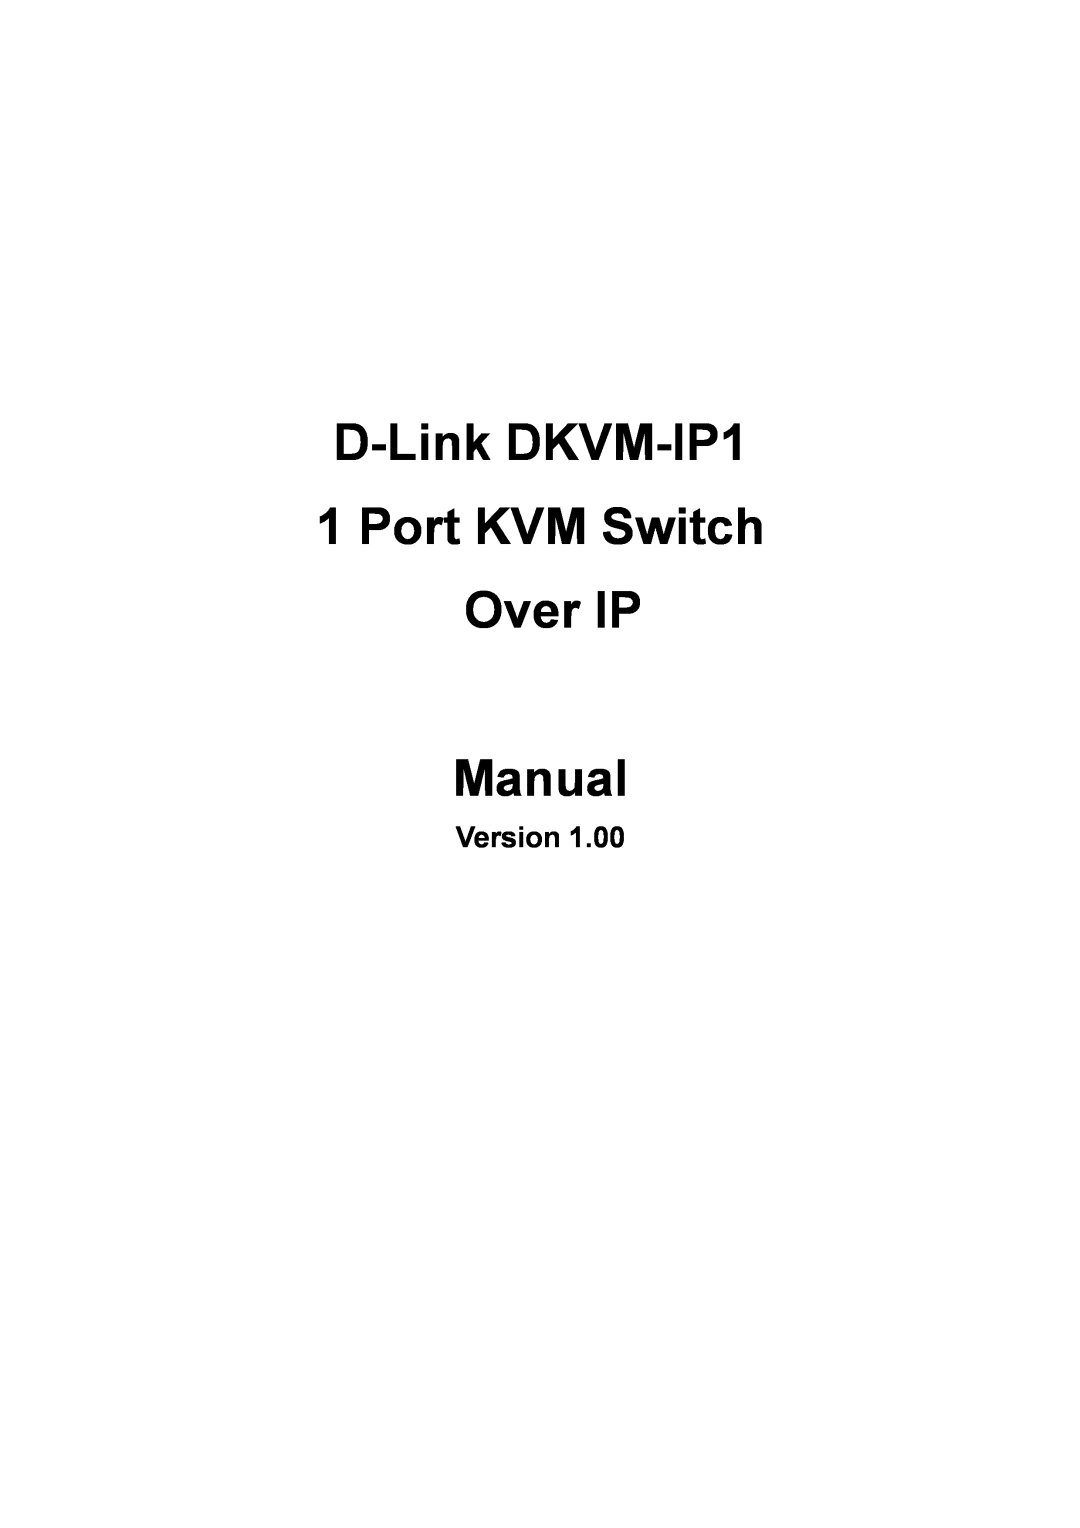 D-Link manual Version, D-Link DKVM-IP1 1 Port KVM Switch Over IP Manual 